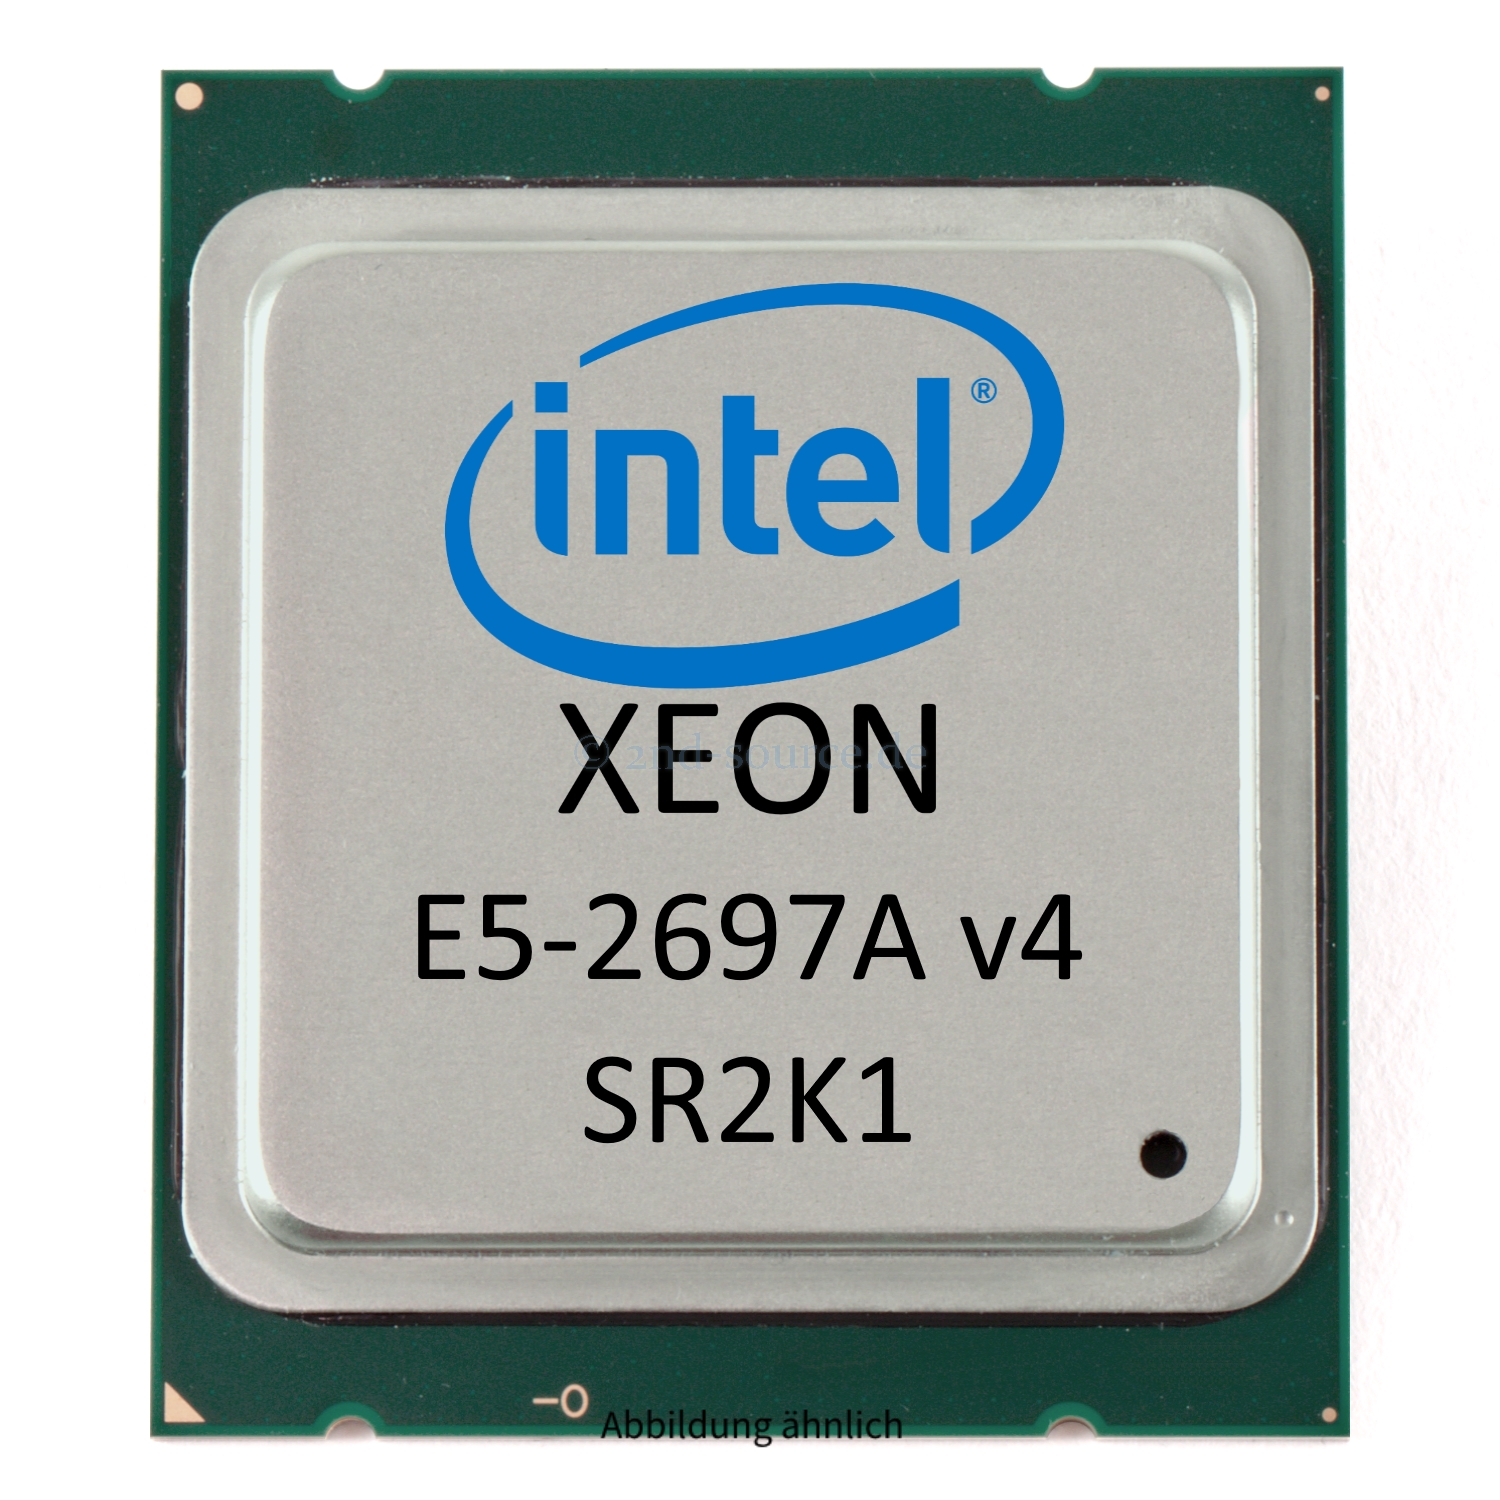 Intel Xeon E5-2697A v4 2.60GHz 40MB 16-Core CPU 145W SR2K1 CM8066002645900